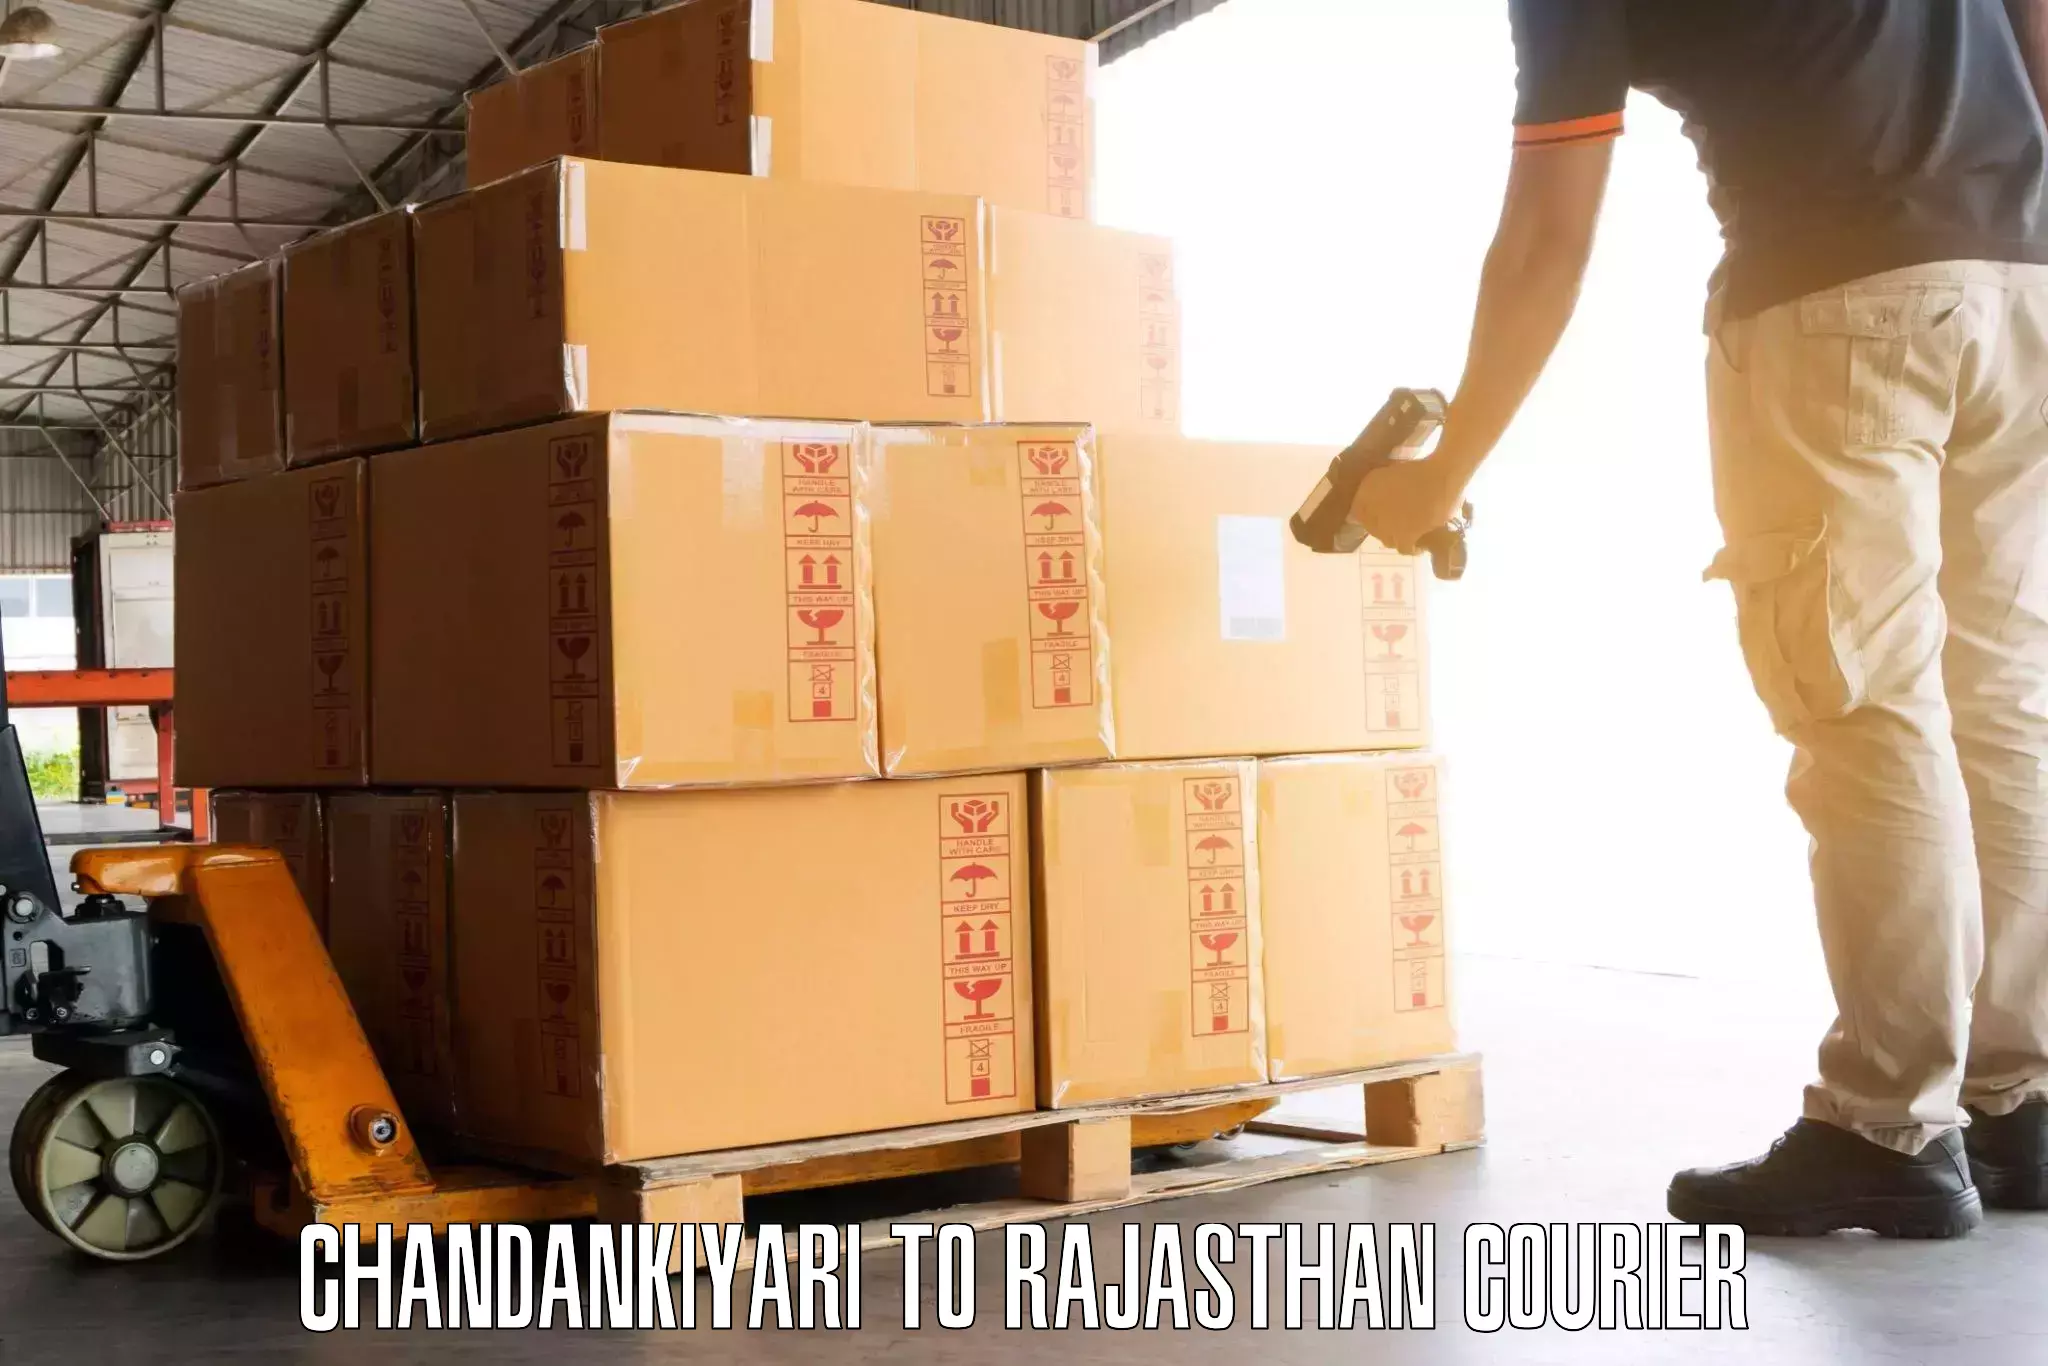 Baggage handling services Chandankiyari to Gudha Gorji